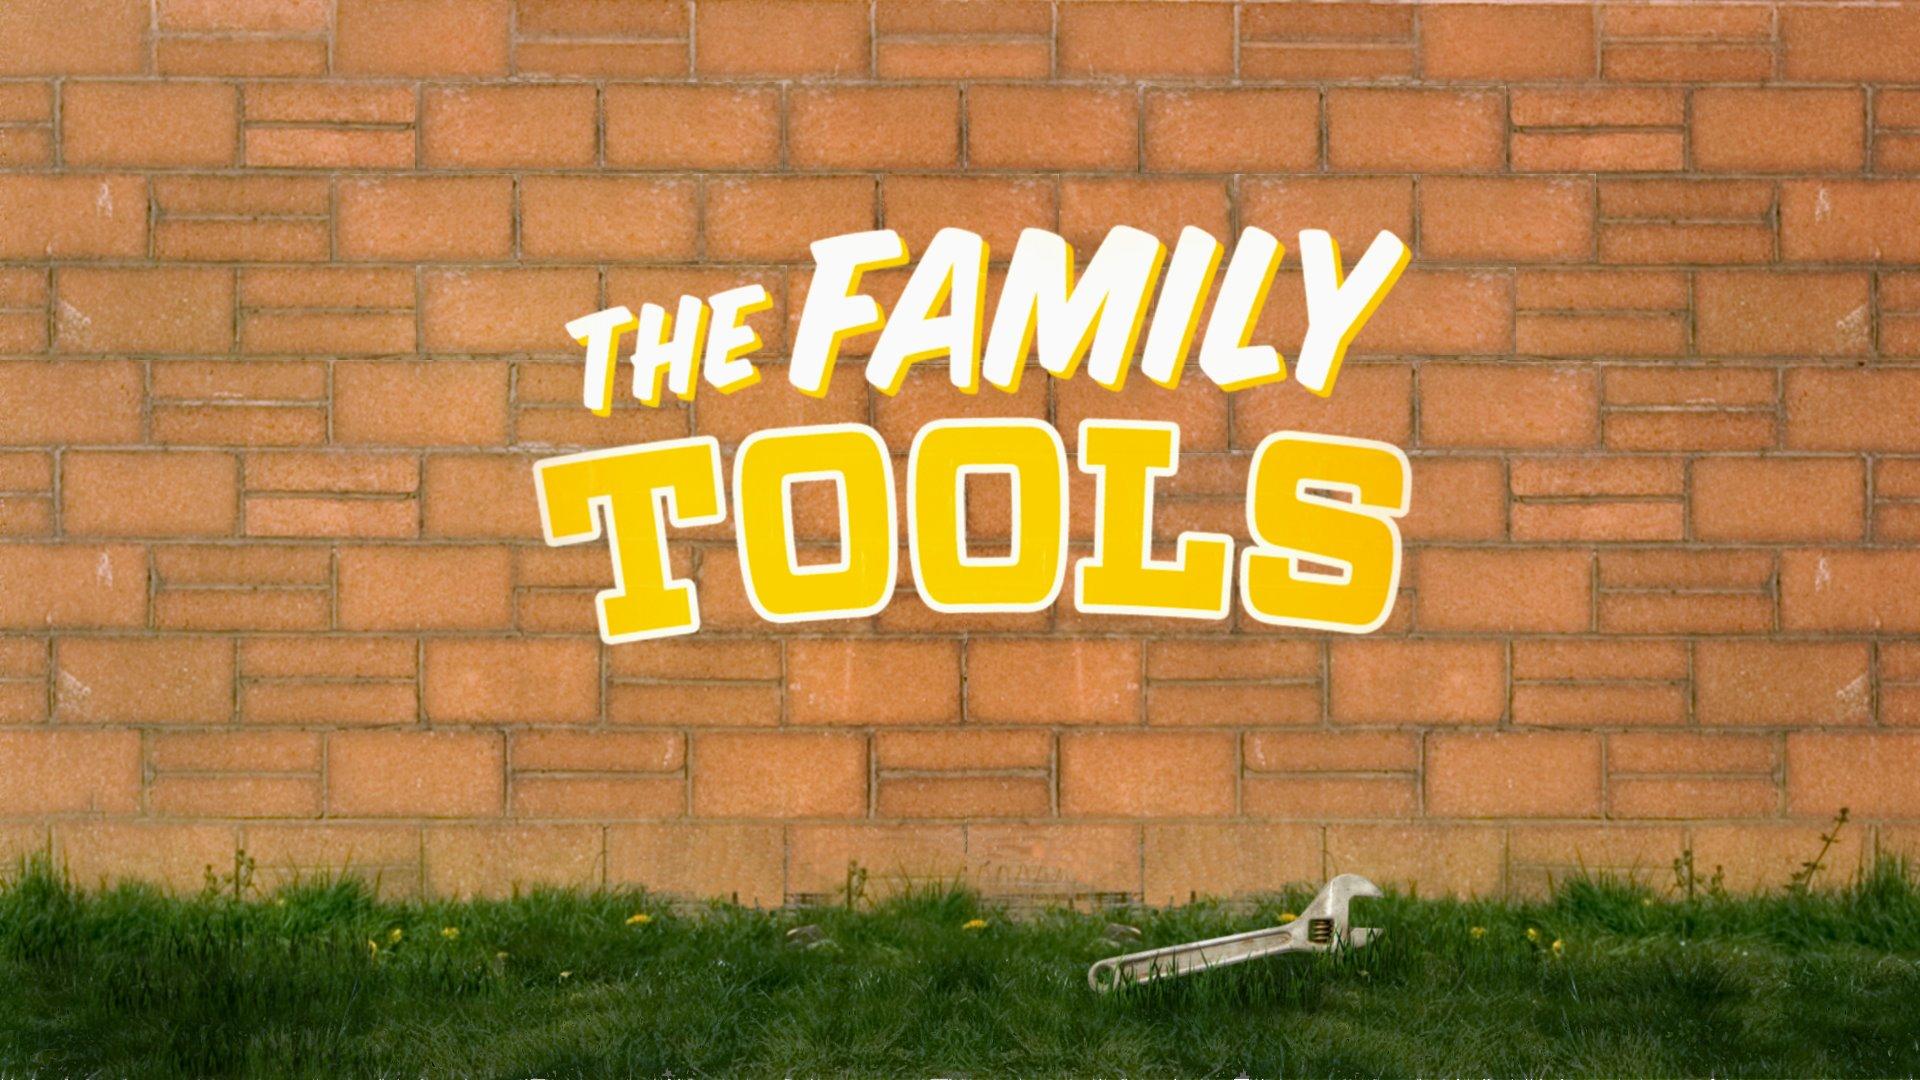 Family tools. Family Toolkit.